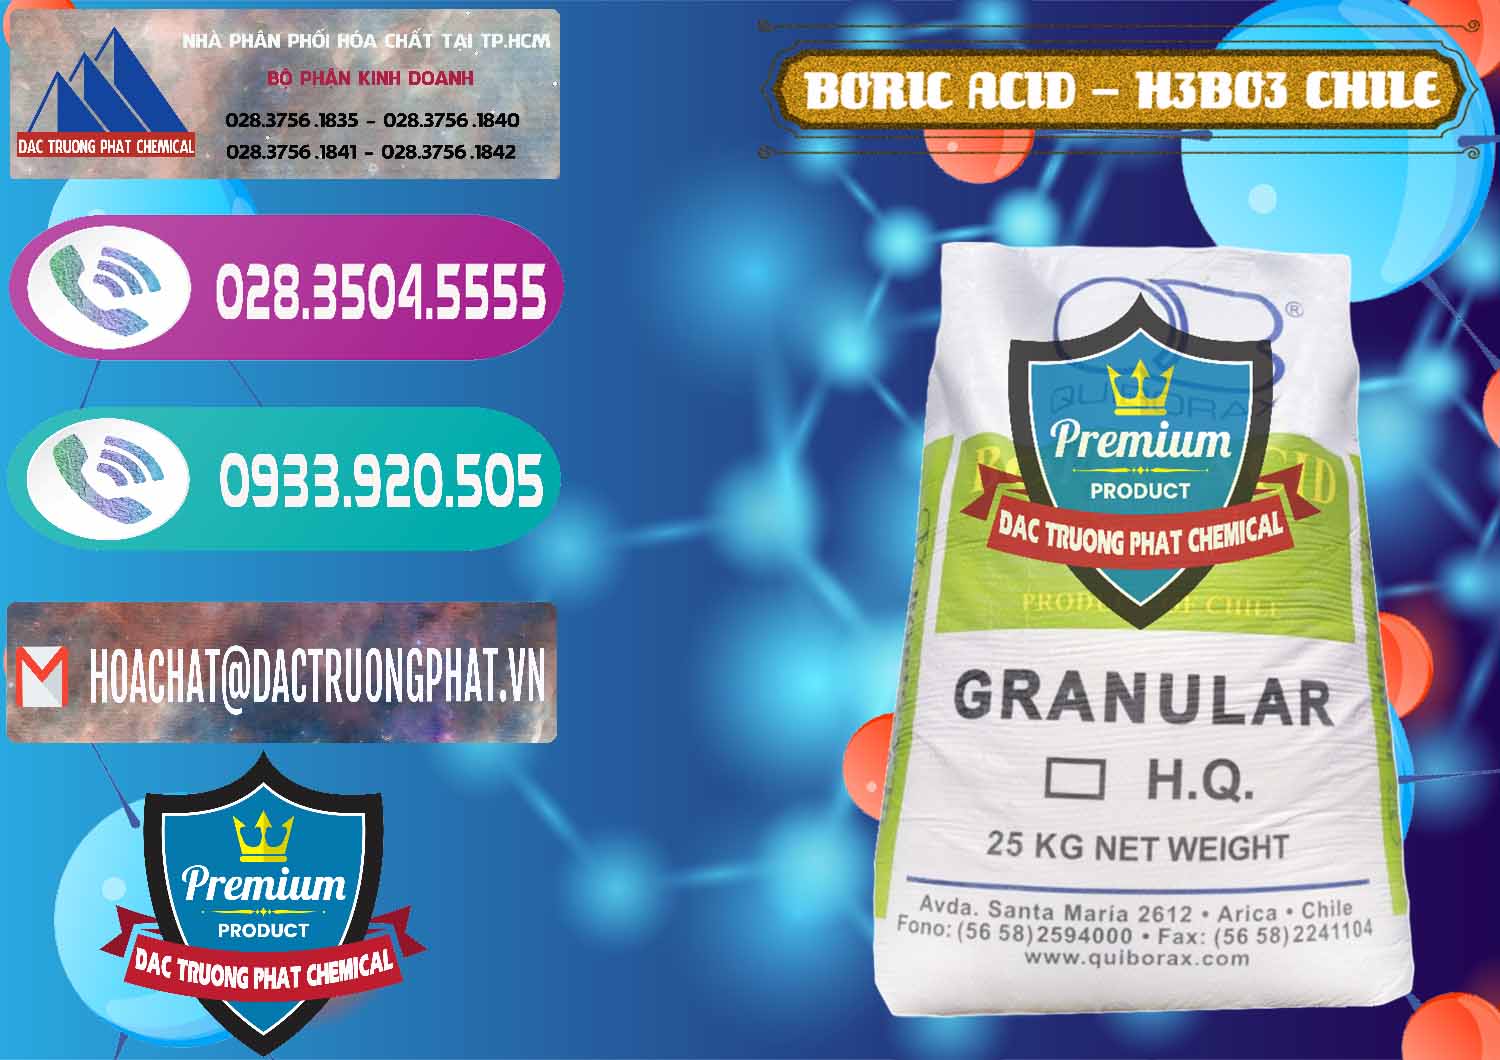 Công ty chuyên bán - cung cấp Acid Boric – Axit Boric H3BO3 99% Quiborax Chile - 0281 - Kinh doanh _ phân phối hóa chất tại TP.HCM - hoachatxulynuoc.com